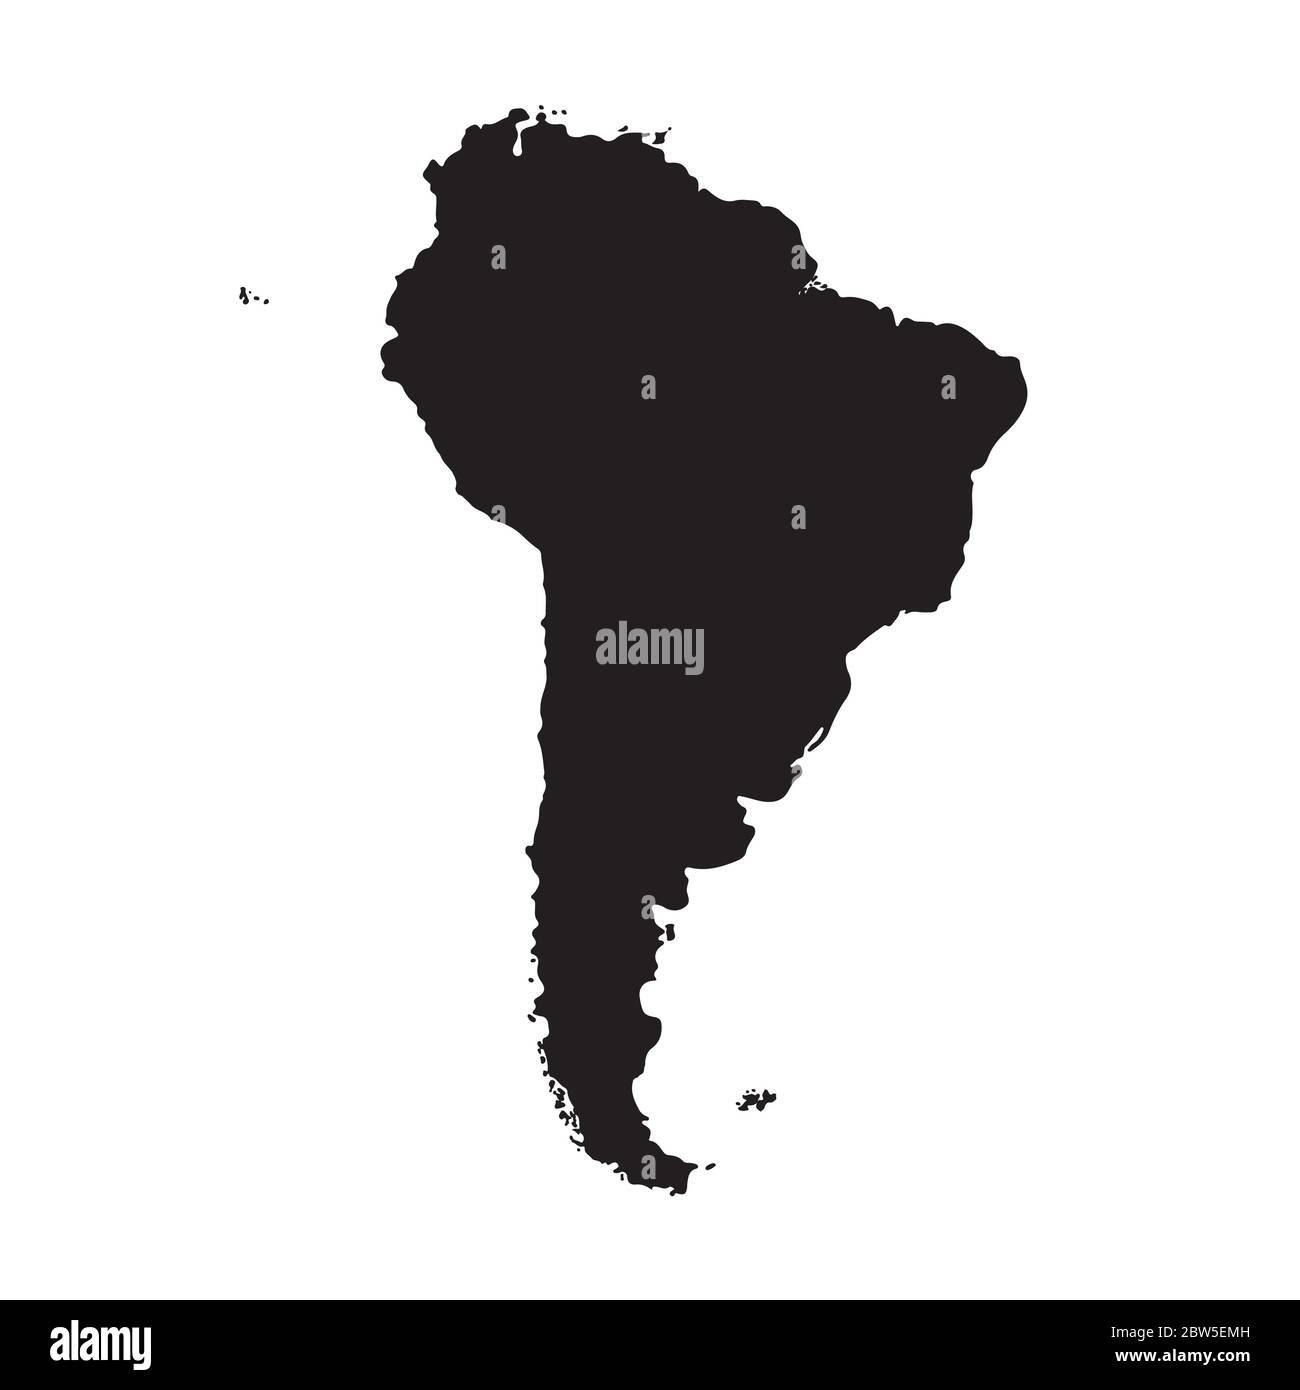 Vektorkarte Südamerika. Isolierte Vektorgrafik. Schwarz auf weißem Hintergrund. EPS 10-Abbildung. Stock Vektor